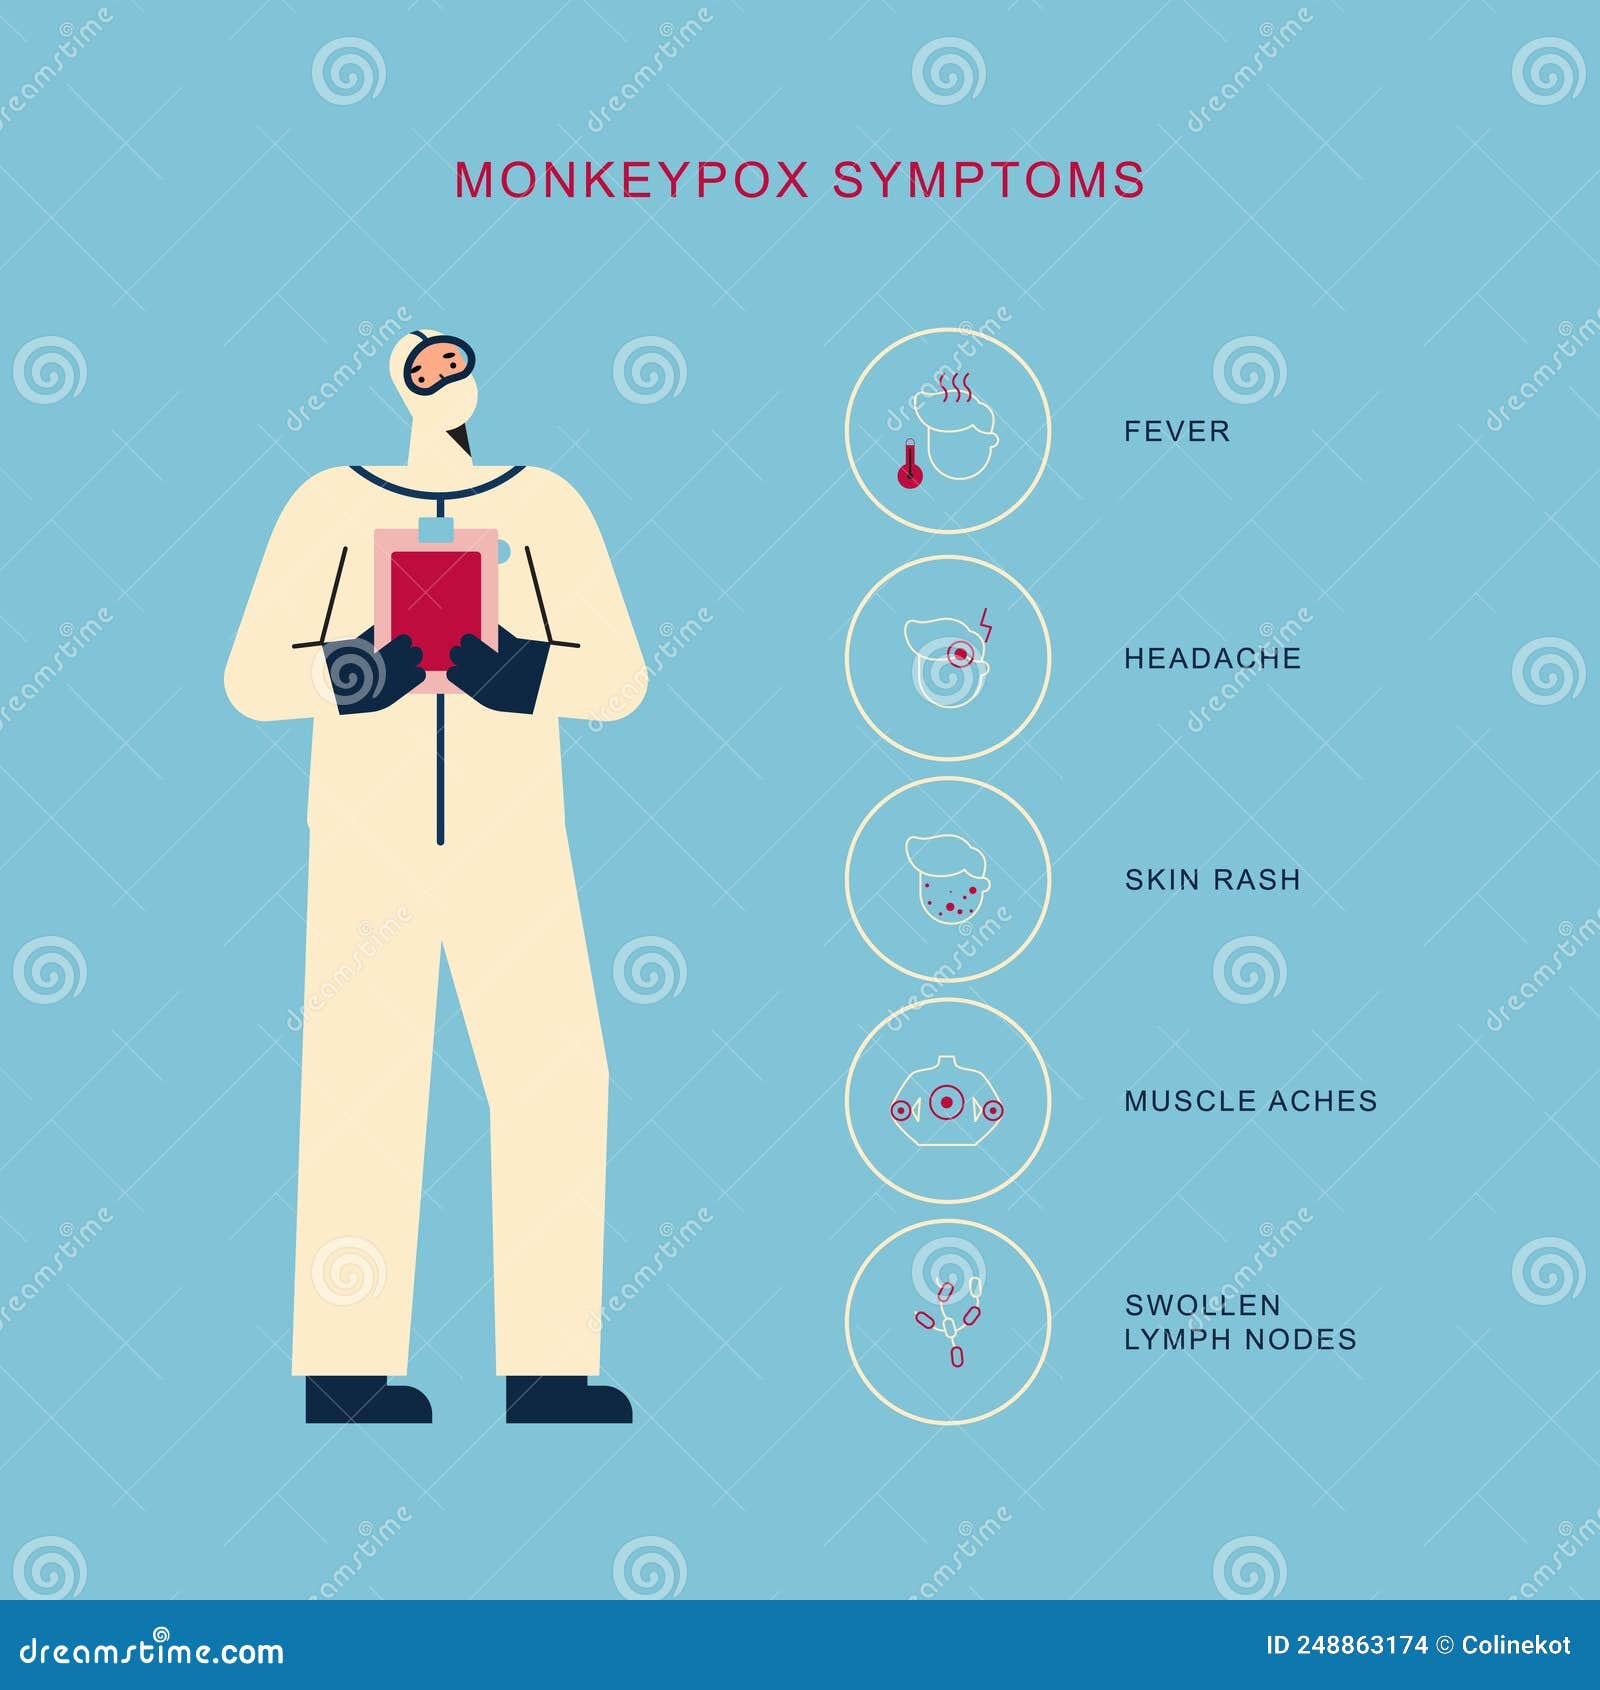 monkeyox symptoms icons